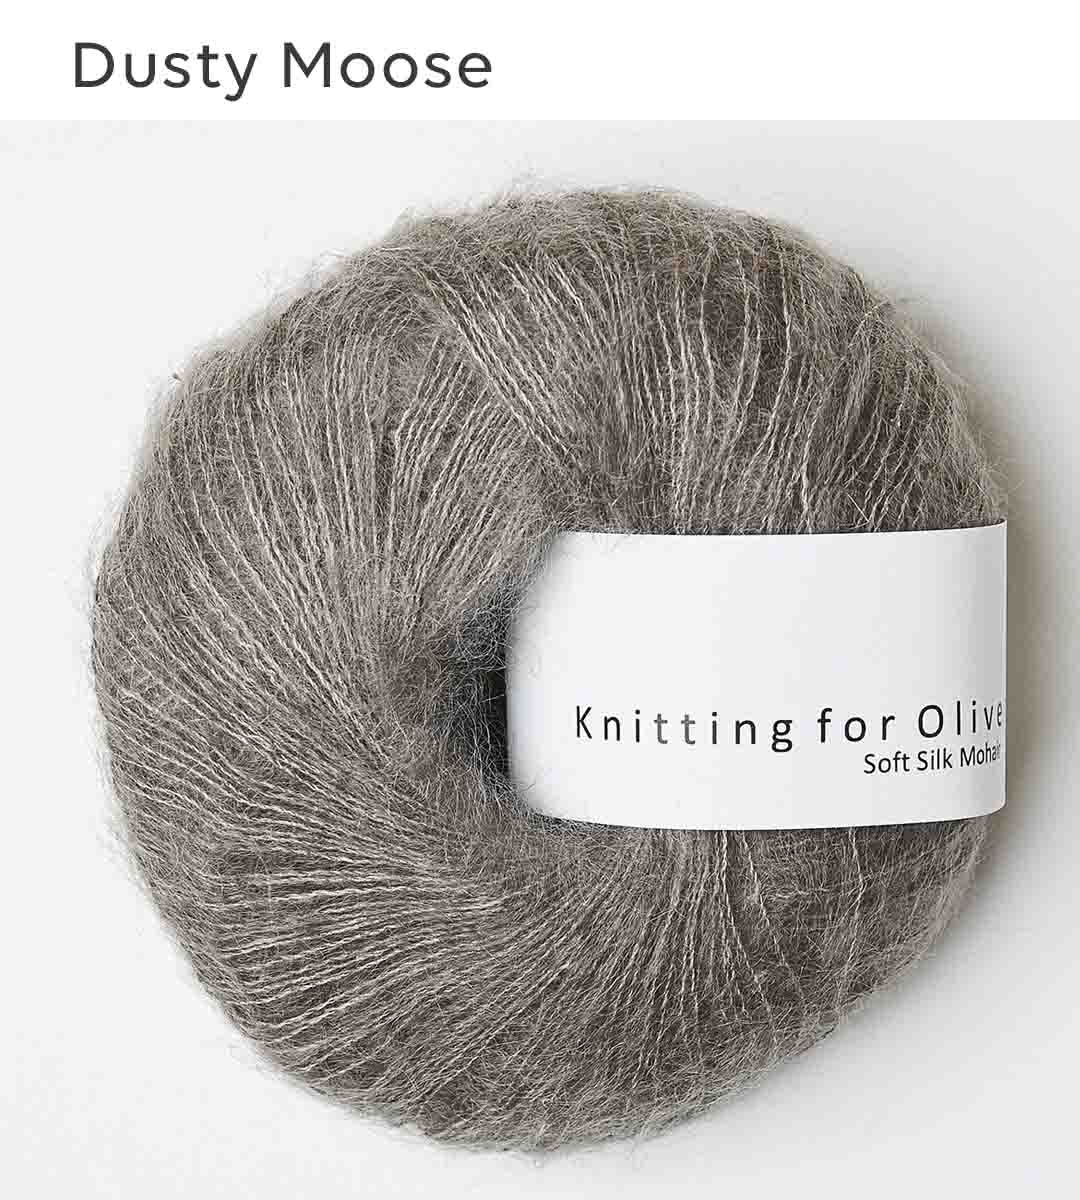 Dusty Moose